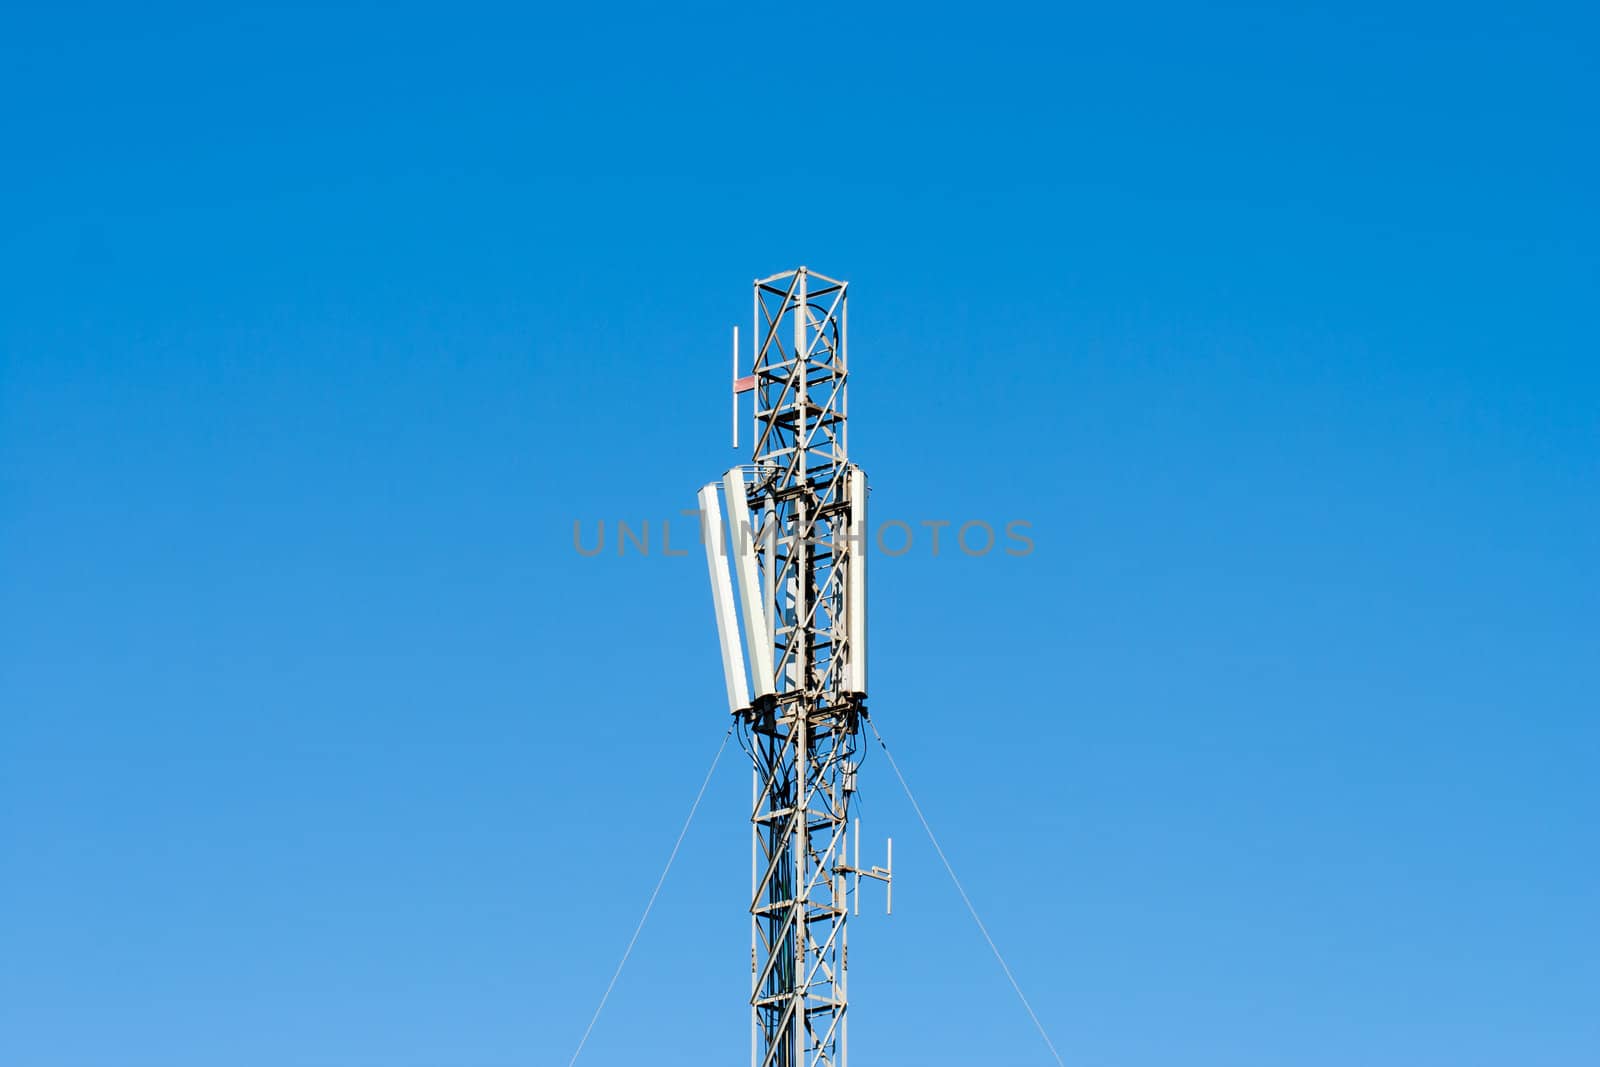 mobilt telecom antenna with blue sky